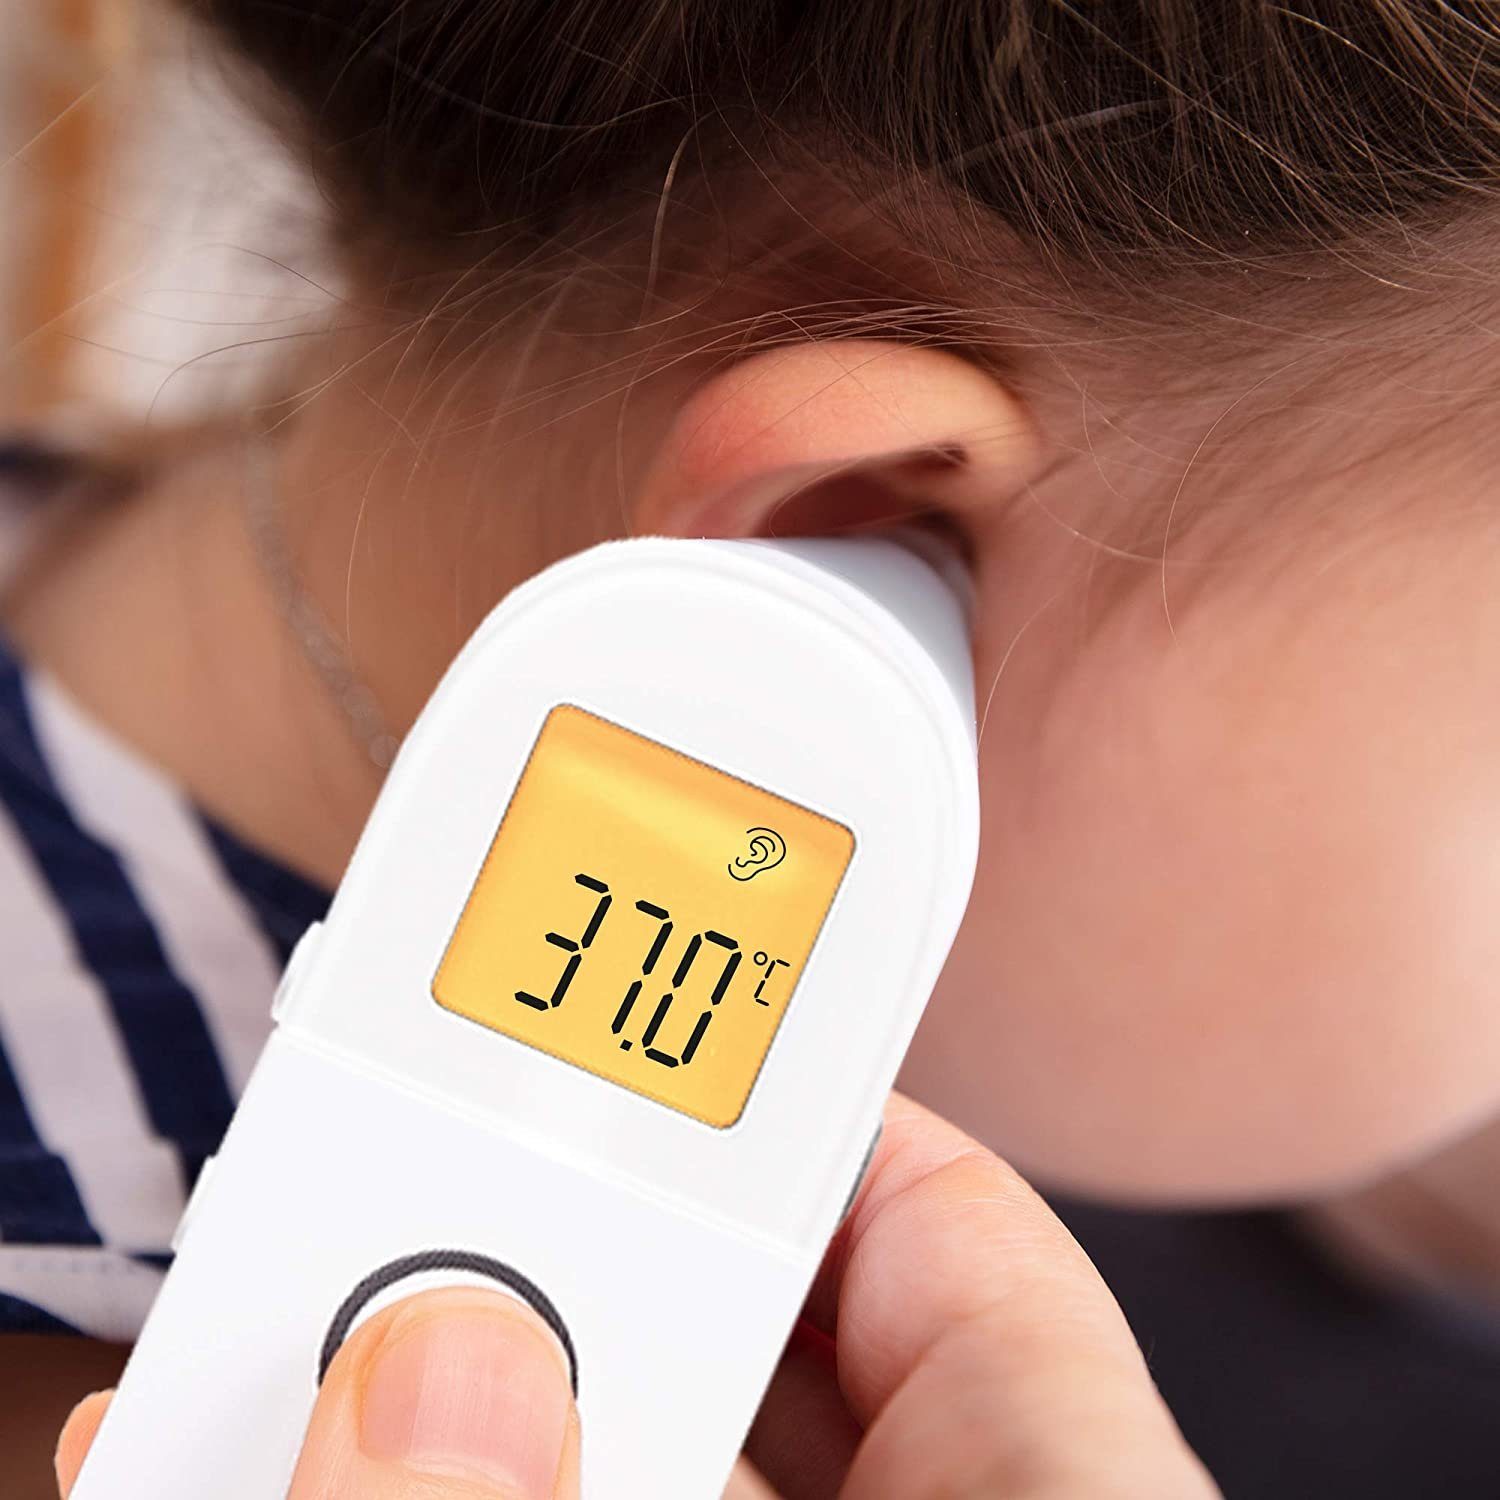 Duronic Infrarot-Thermometer, und Erwachsene 1 Bedienung Gegenstände, Ergebnis Kinder, Einfache Für Infrarot-Thermometer, in genaues Digitale und 3 kontaktlos, IRT3W Babys, Fiebermessung, Strinthermometer